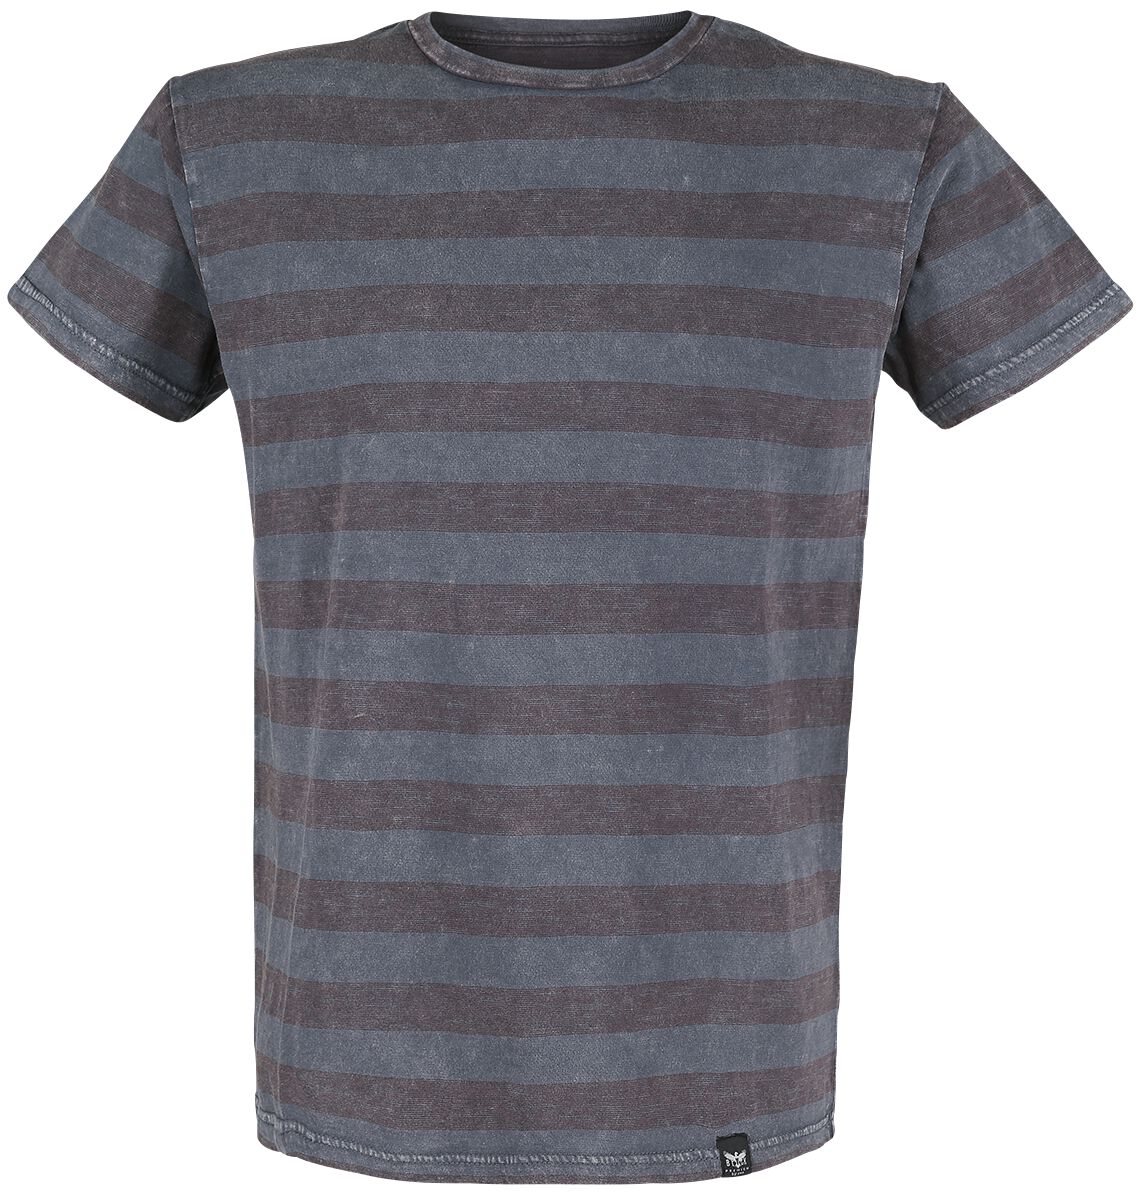 Black Premium by EMP T-Shirt - graues T-Shirt mit Querstreifen und Rundhalsausschnitt - S bis 5XL - für Männer - Größe 5XL - grau